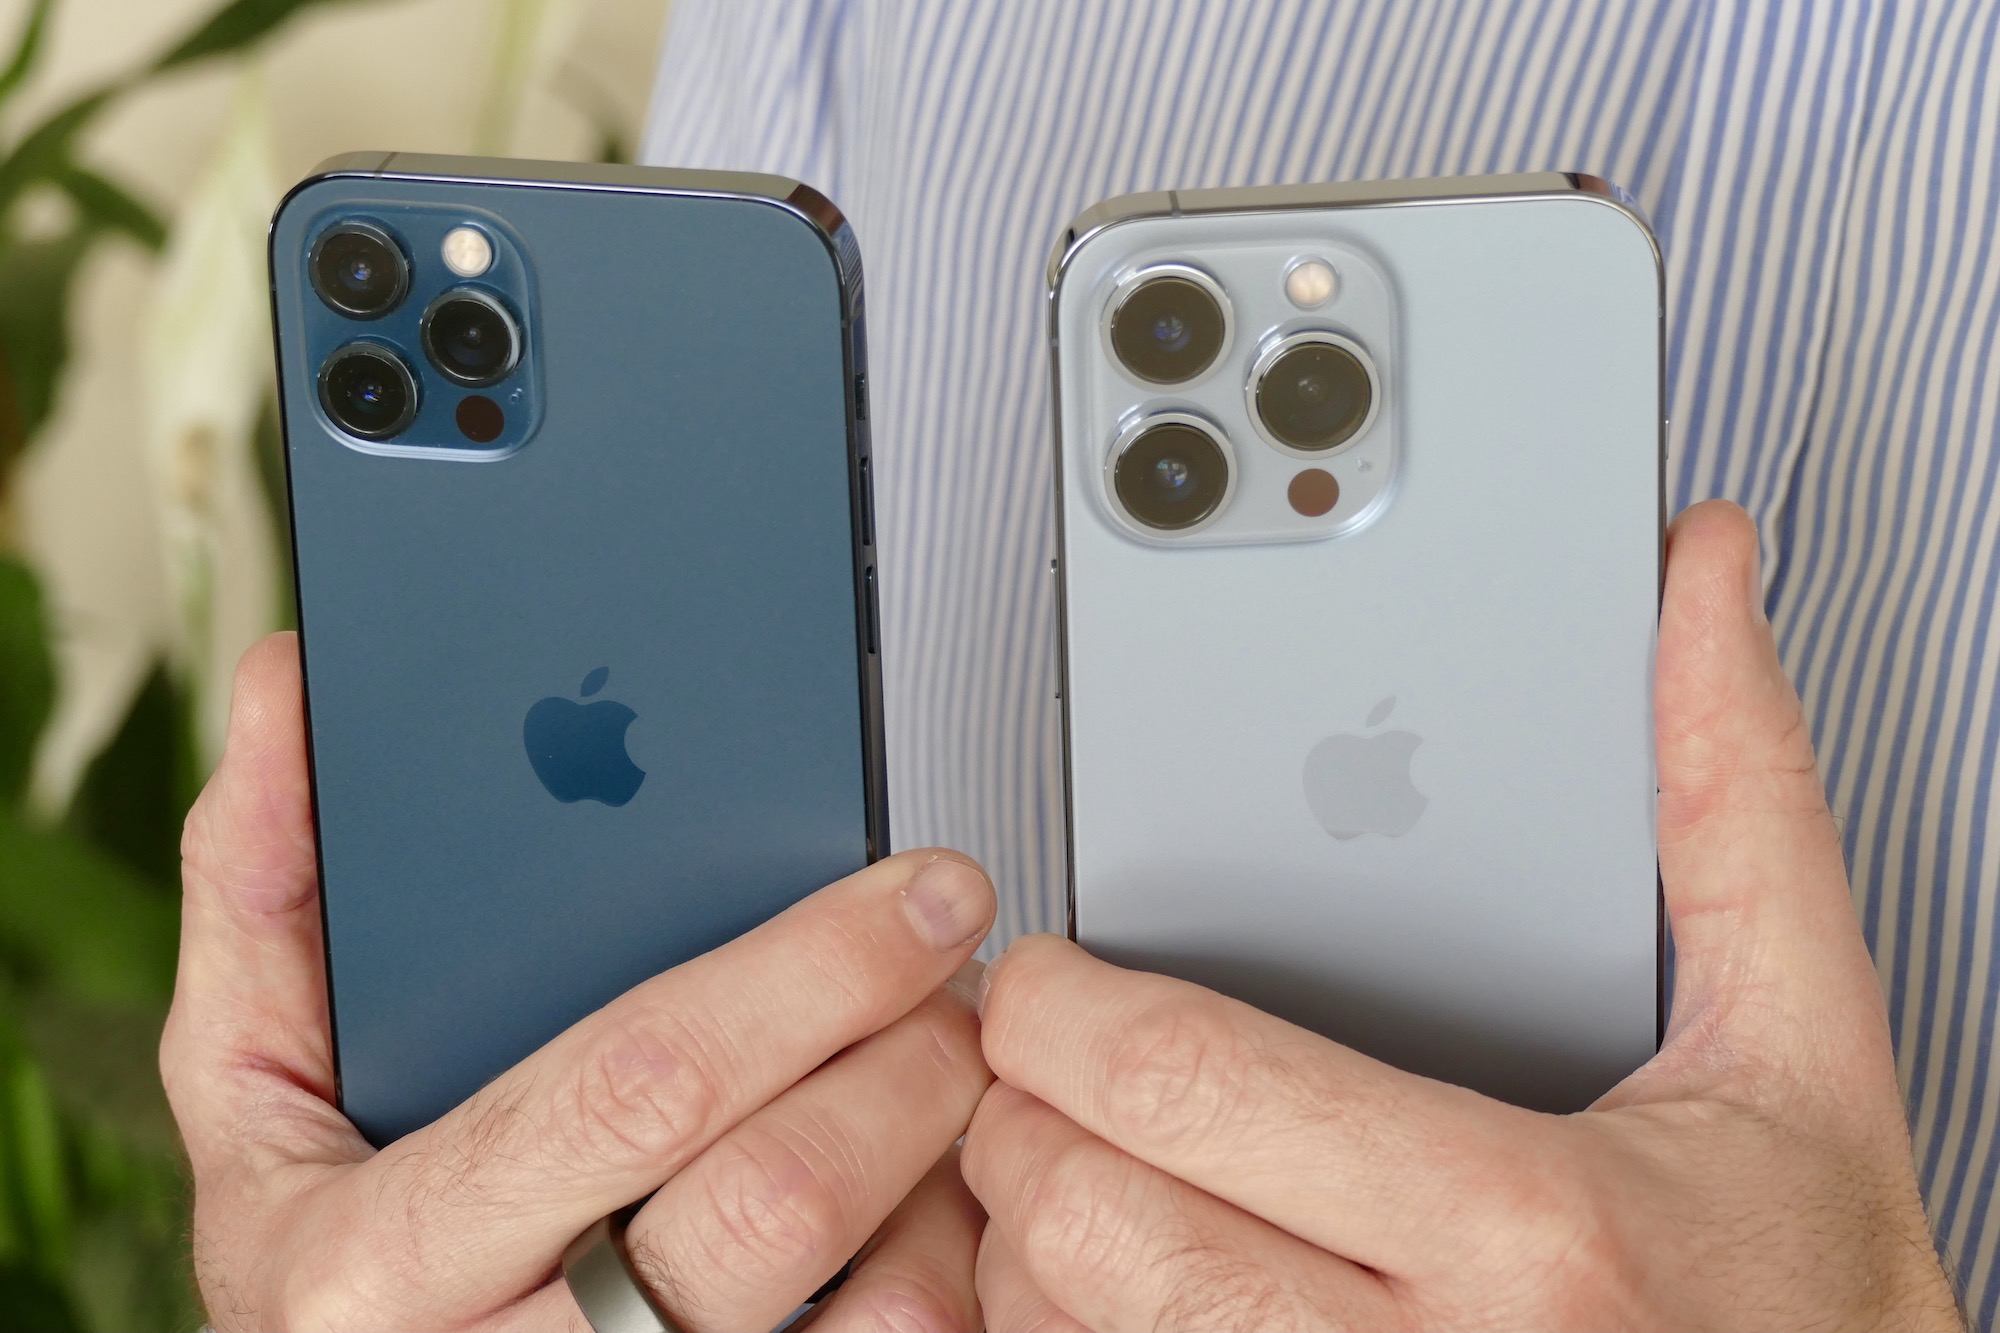 iPhone 12 Pro versus iPhone 13 Pro : quelles différences entre les